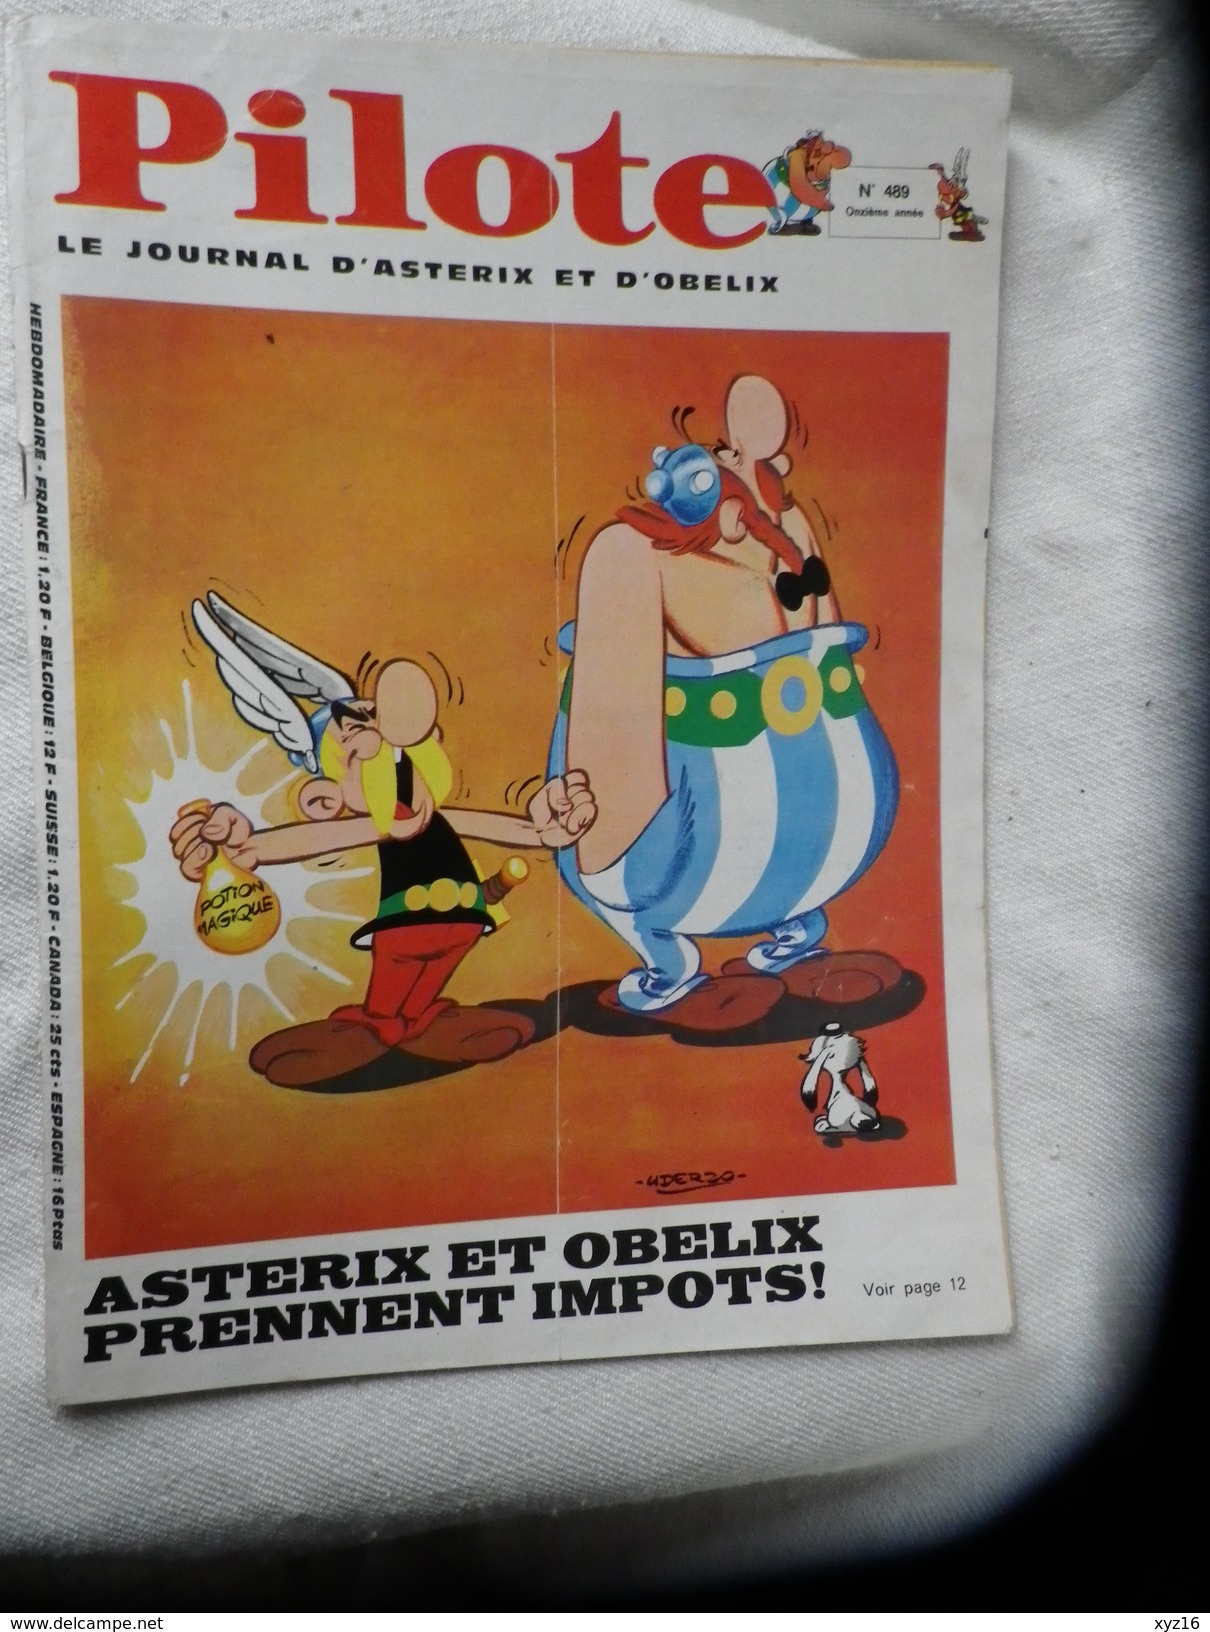 Pilote Le Journal D'Astérix Et Obélix N° 489 Mars 1969 - Pilote